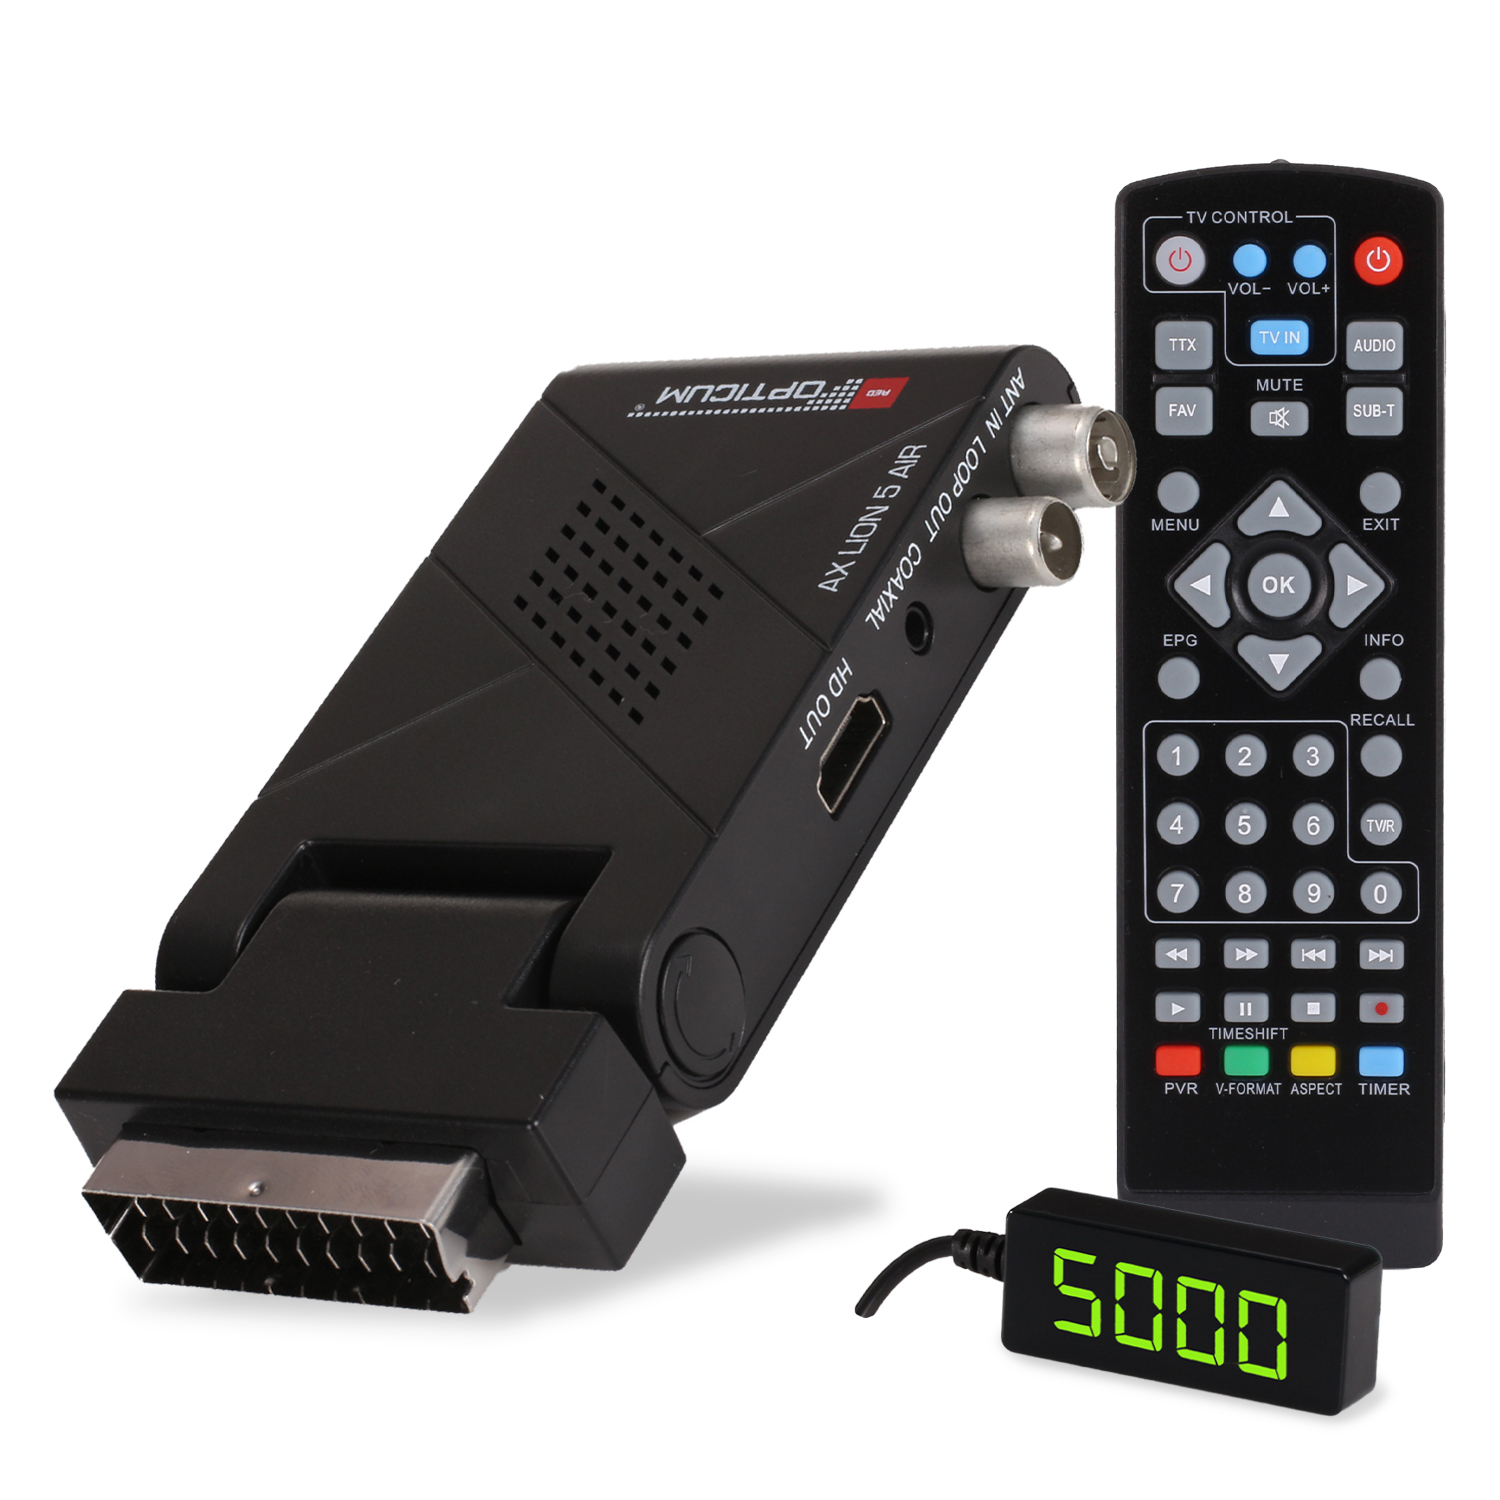 RED OPTICUM HD-Receiver - (H.264), HDMI PVR-Funktion, DVB-T2 Receiver (H.265), I DVB-T2 Aufnahmefunktion DVB-T, DVB-T2 DVB-T2 Receiver PVR mit SCART/ HD HD AX AIR 5 DVB-T2 (HDTV, Lion schwarz)